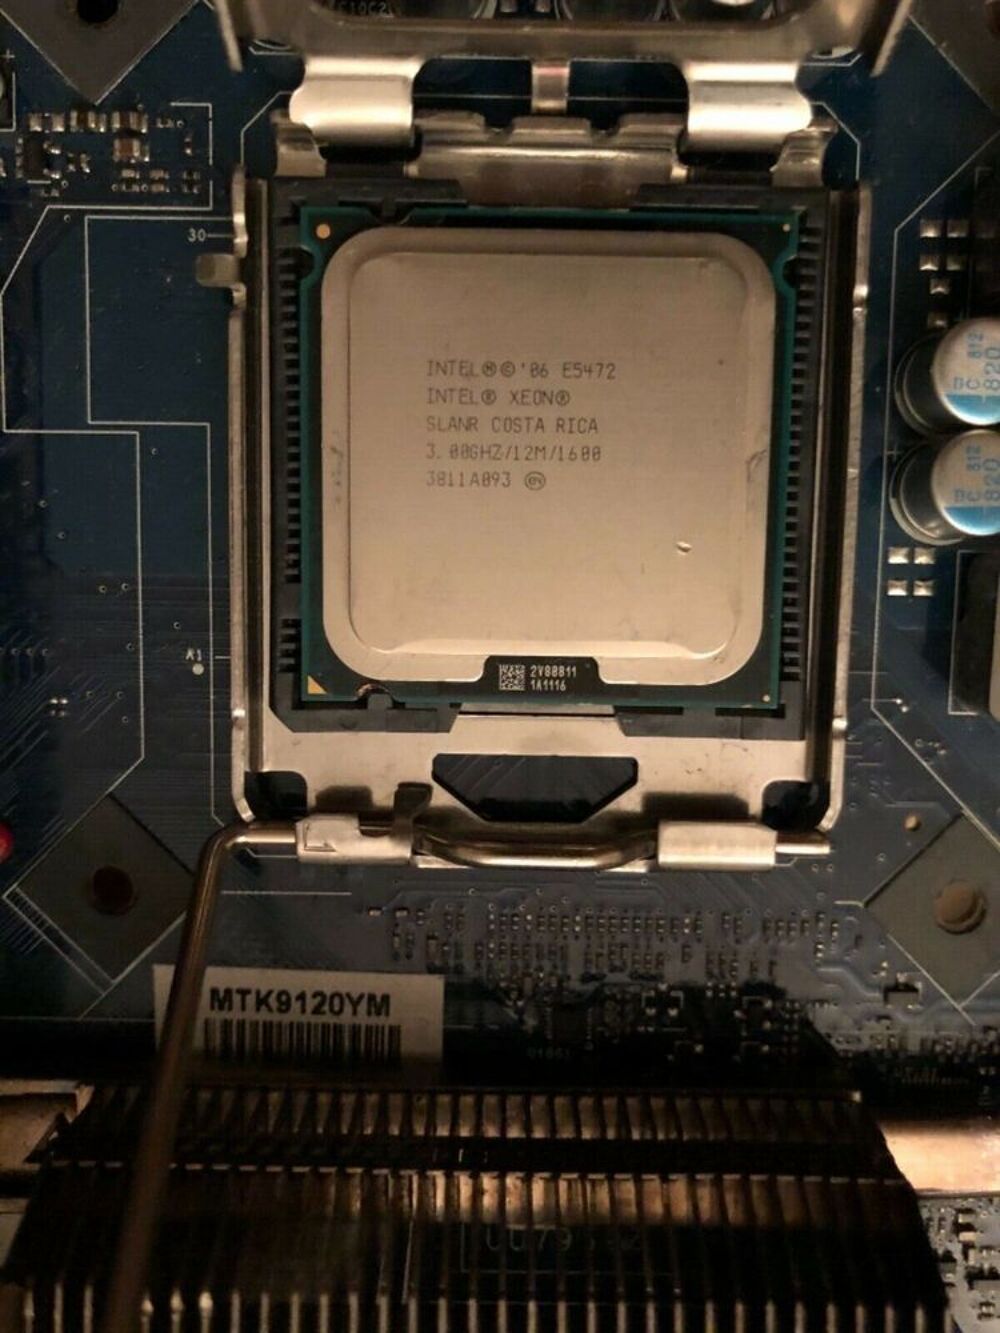 Intel Xeon&reg; Processeur E5472 12M 3.00GHz 1600MHz LGA775 775 Matriel informatique